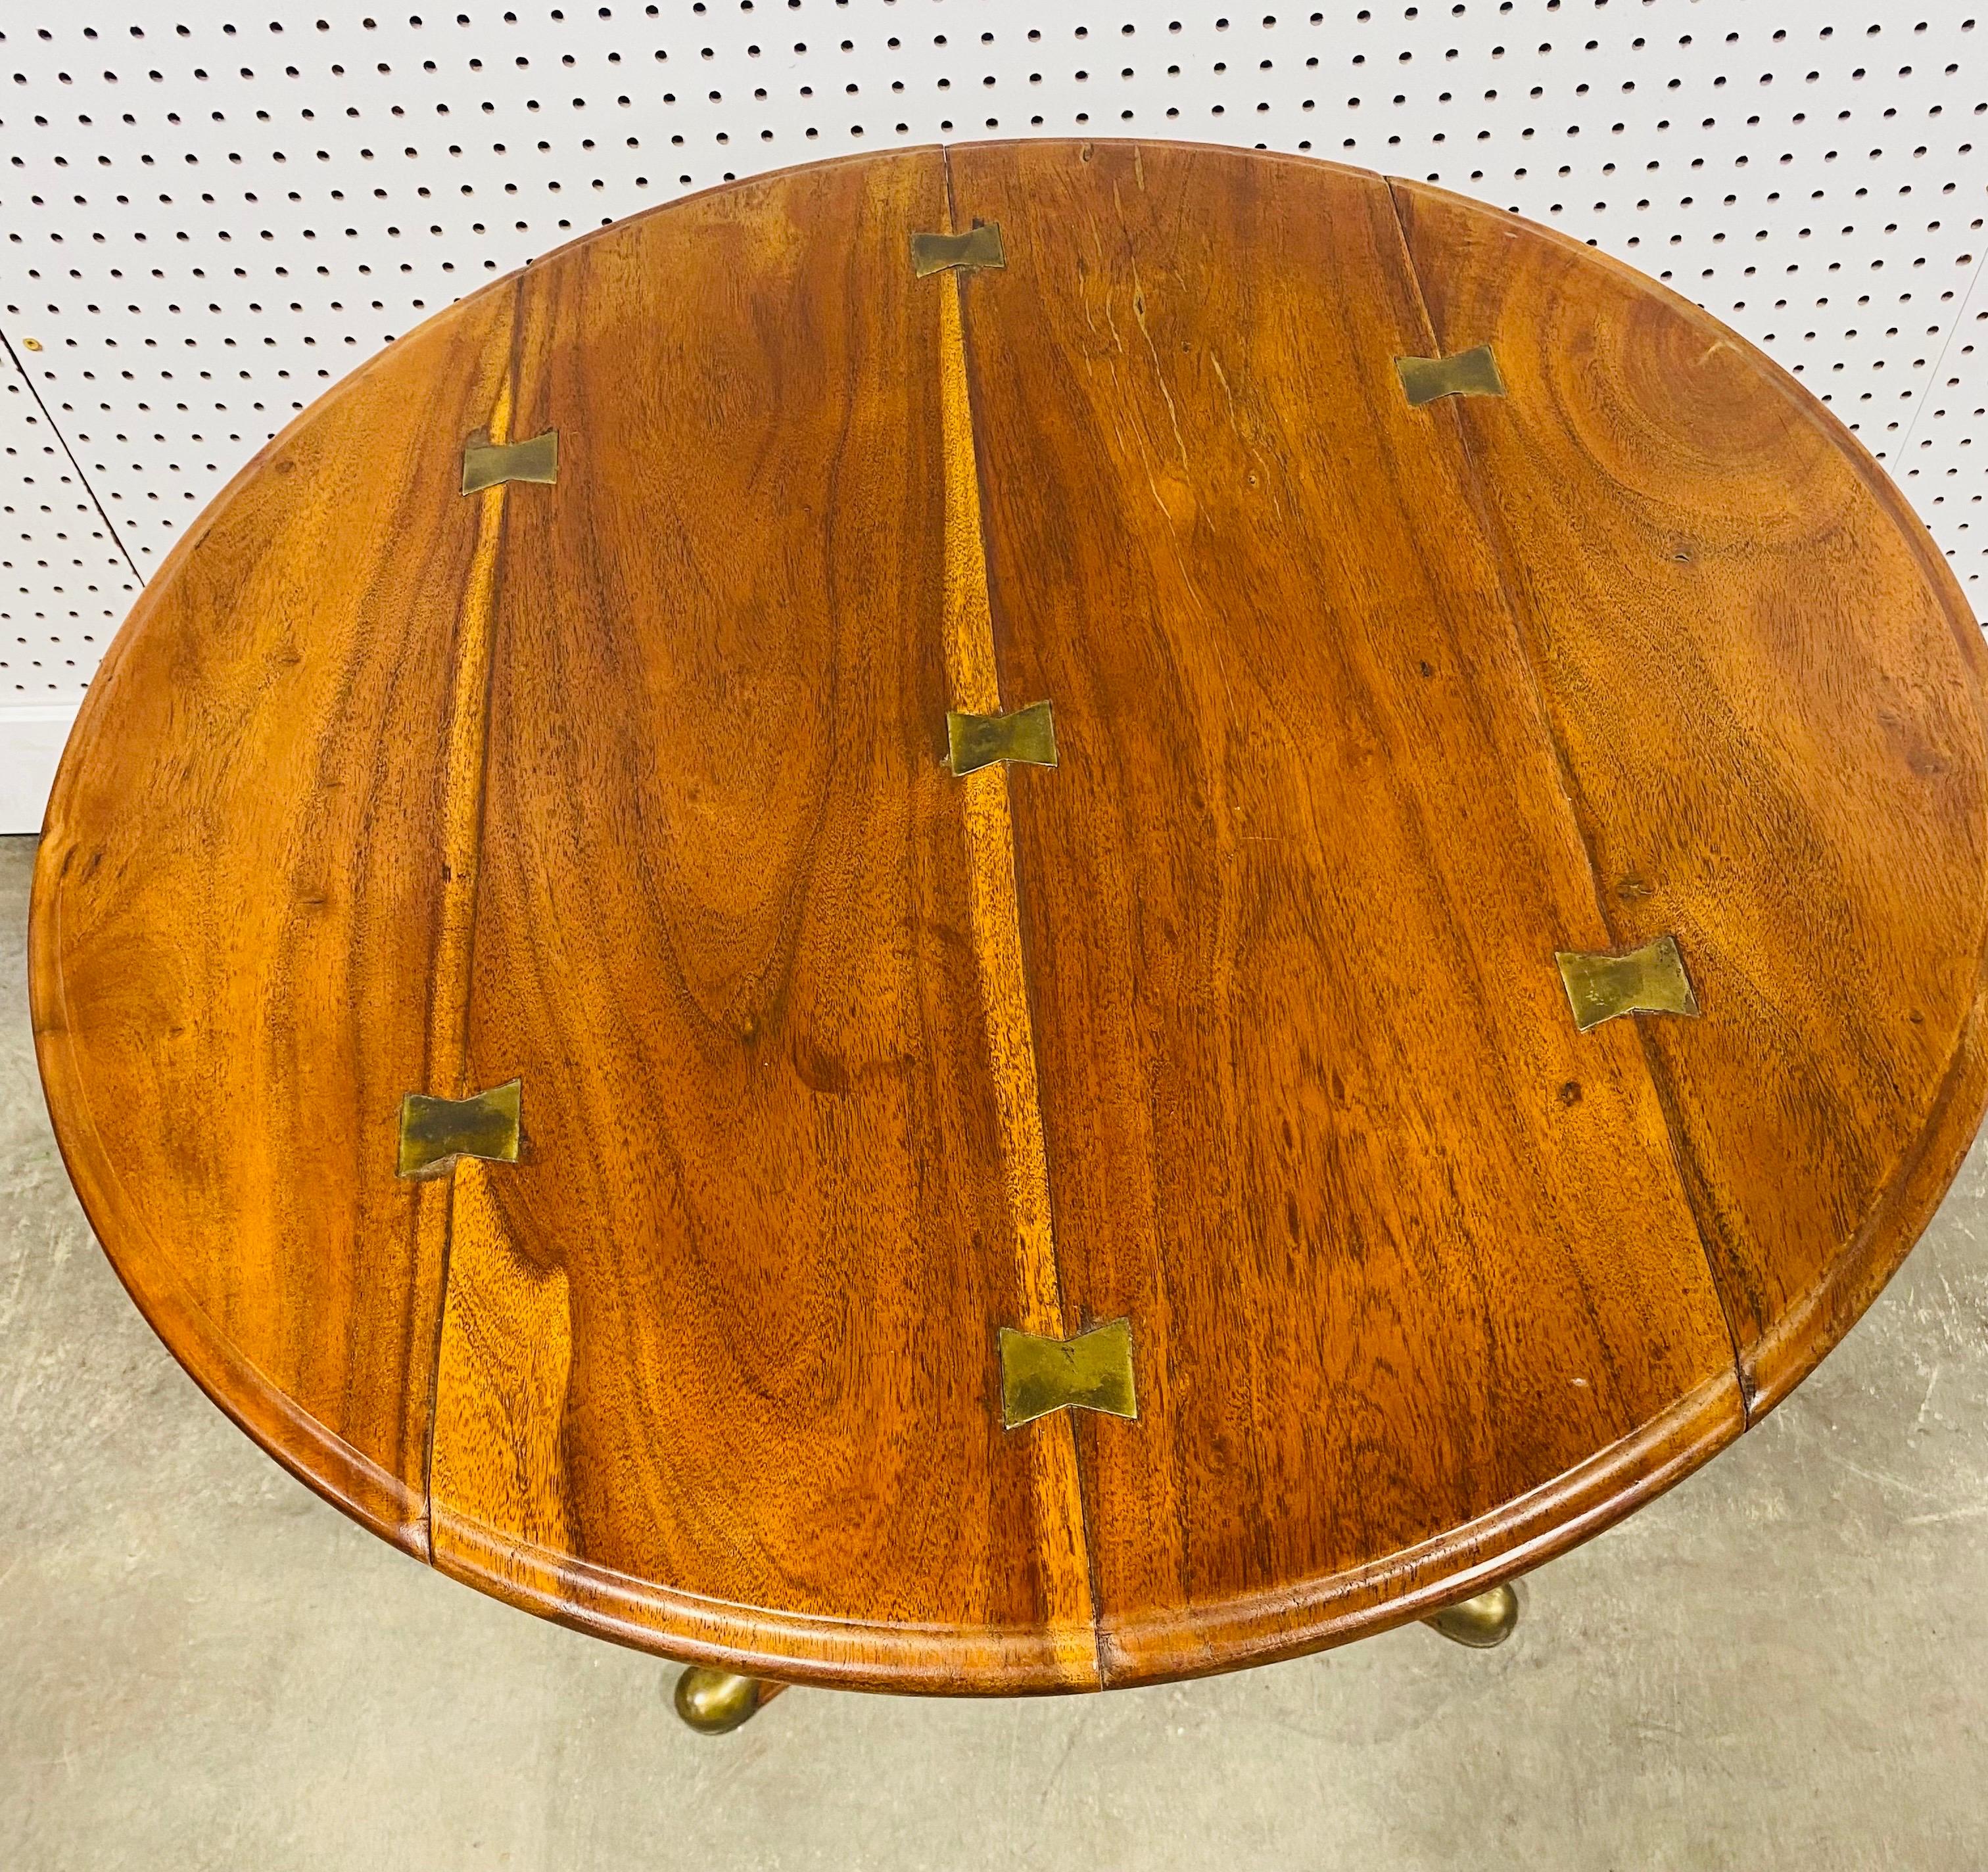 Il s'agit d'une table d'appoint en noyer et laiton de style classique, réalisée à la main par Theodore Alexander. Cette table a un pied classique de type 